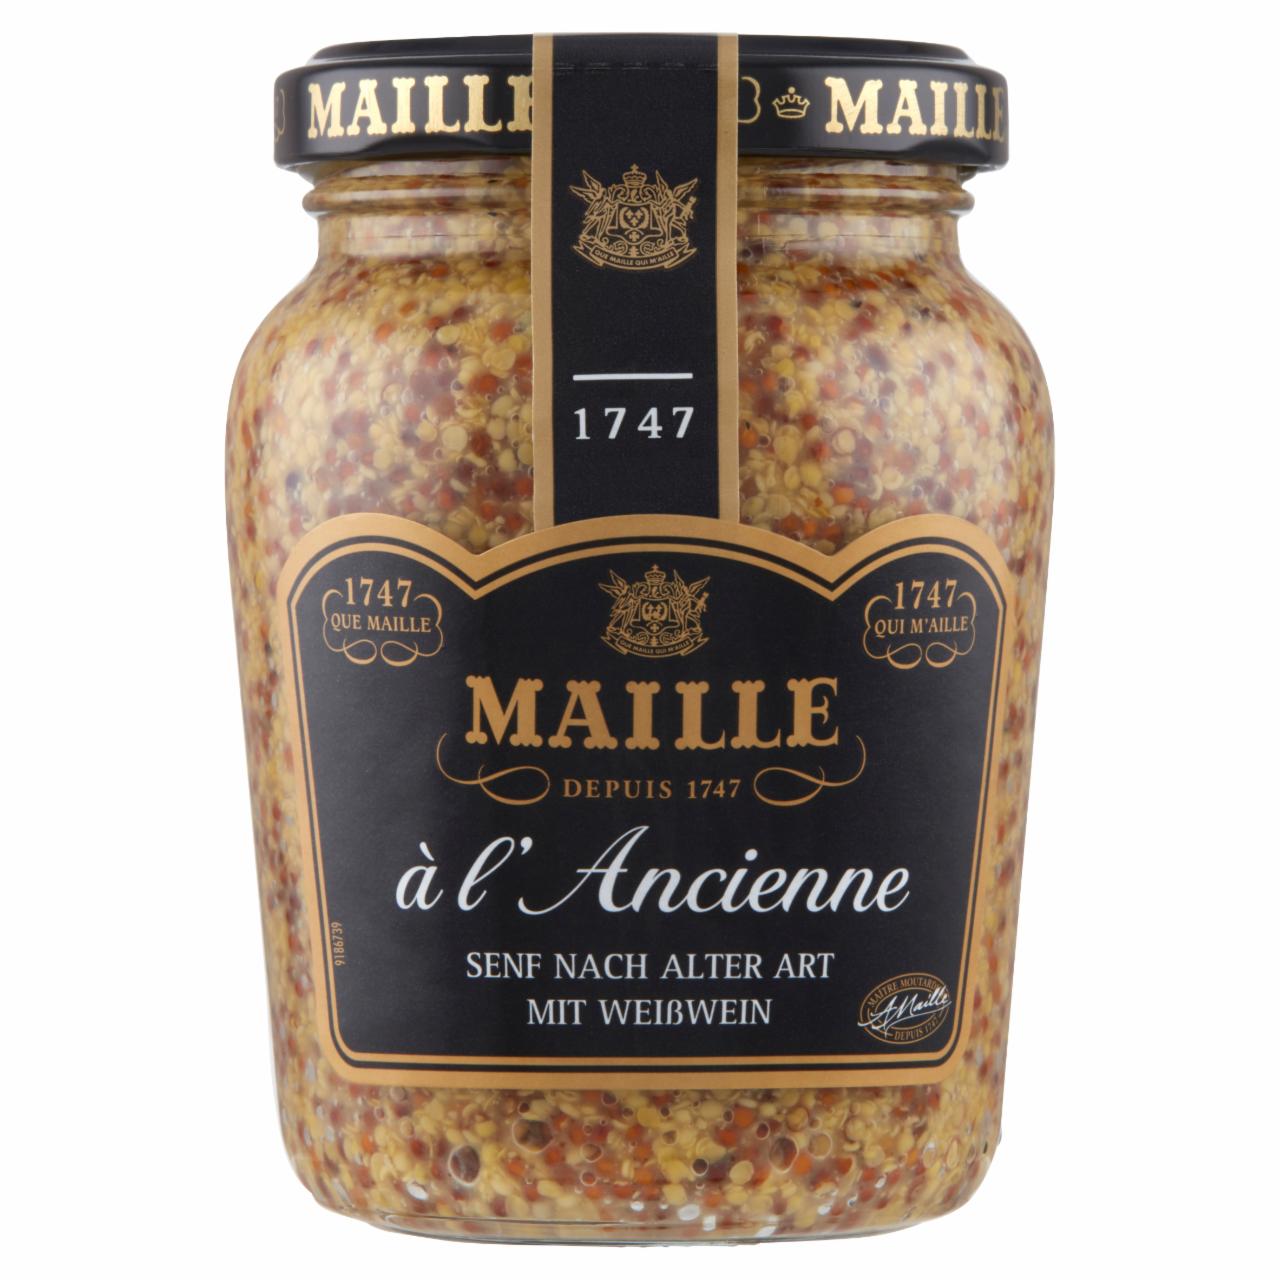 Képek - Maille hagyományos mustár fehérborral 200 ml